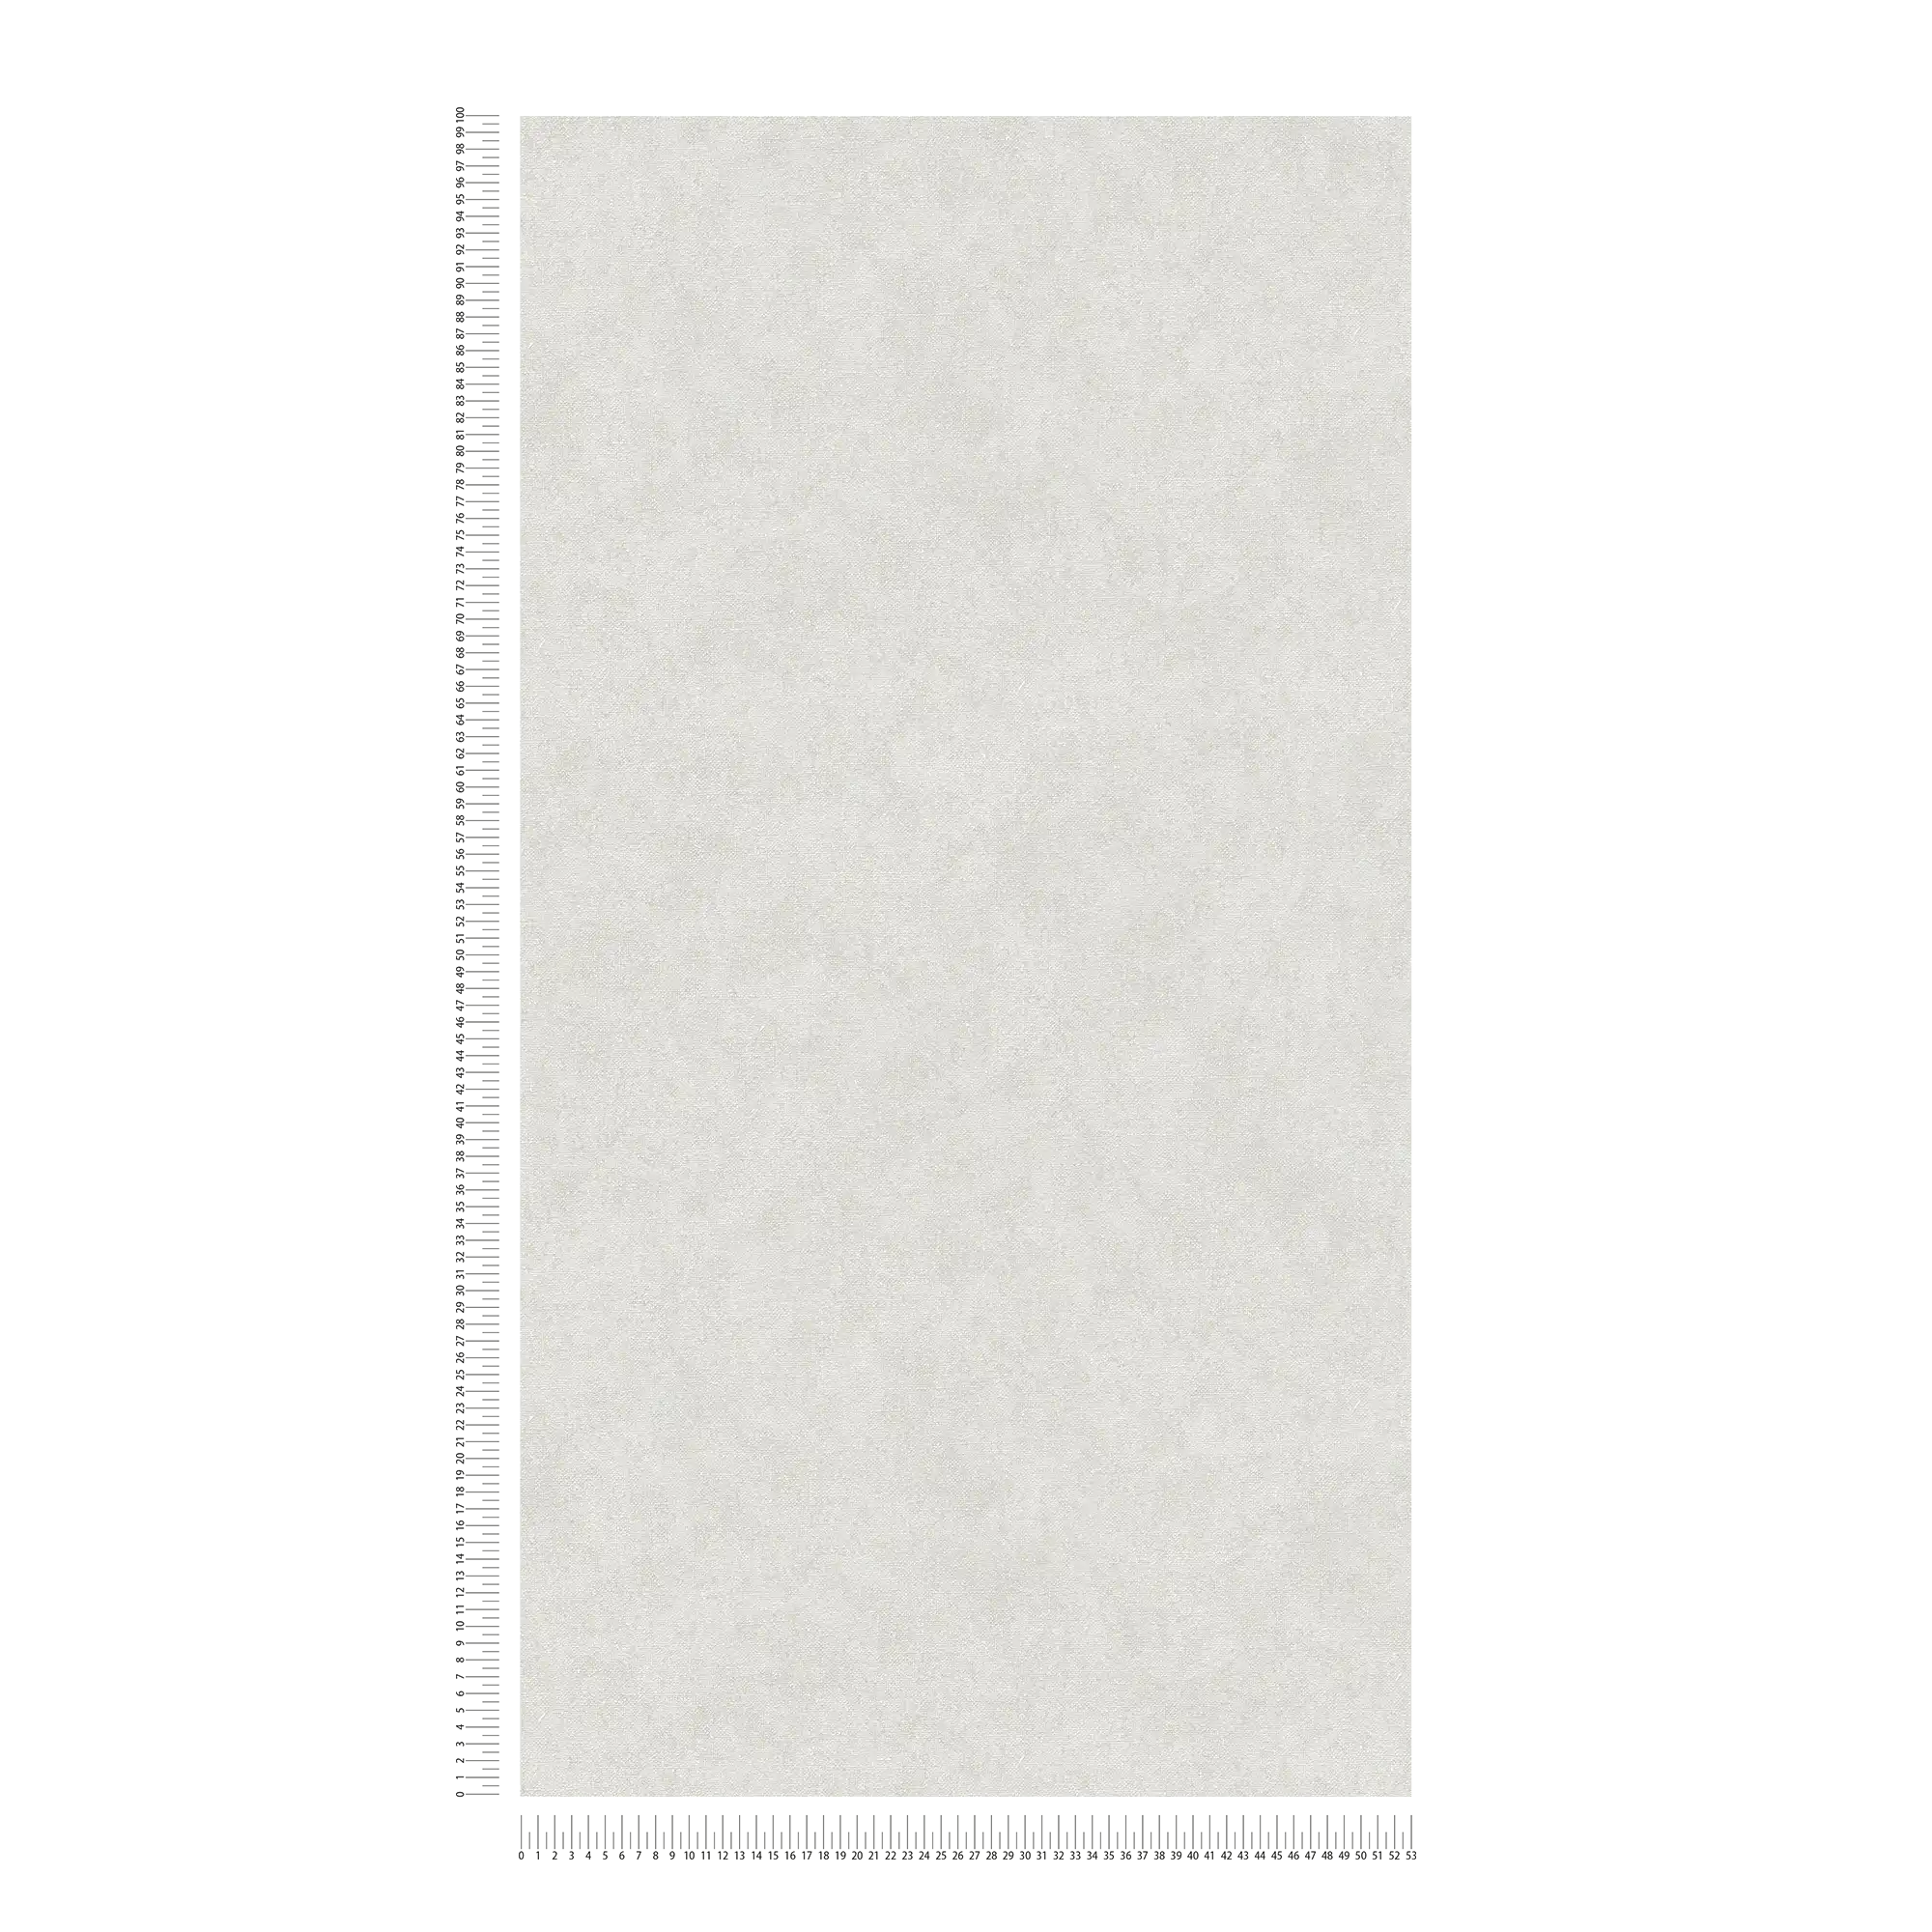             Papel pintado de unidad gris pálido con aspecto textil - Gris
        